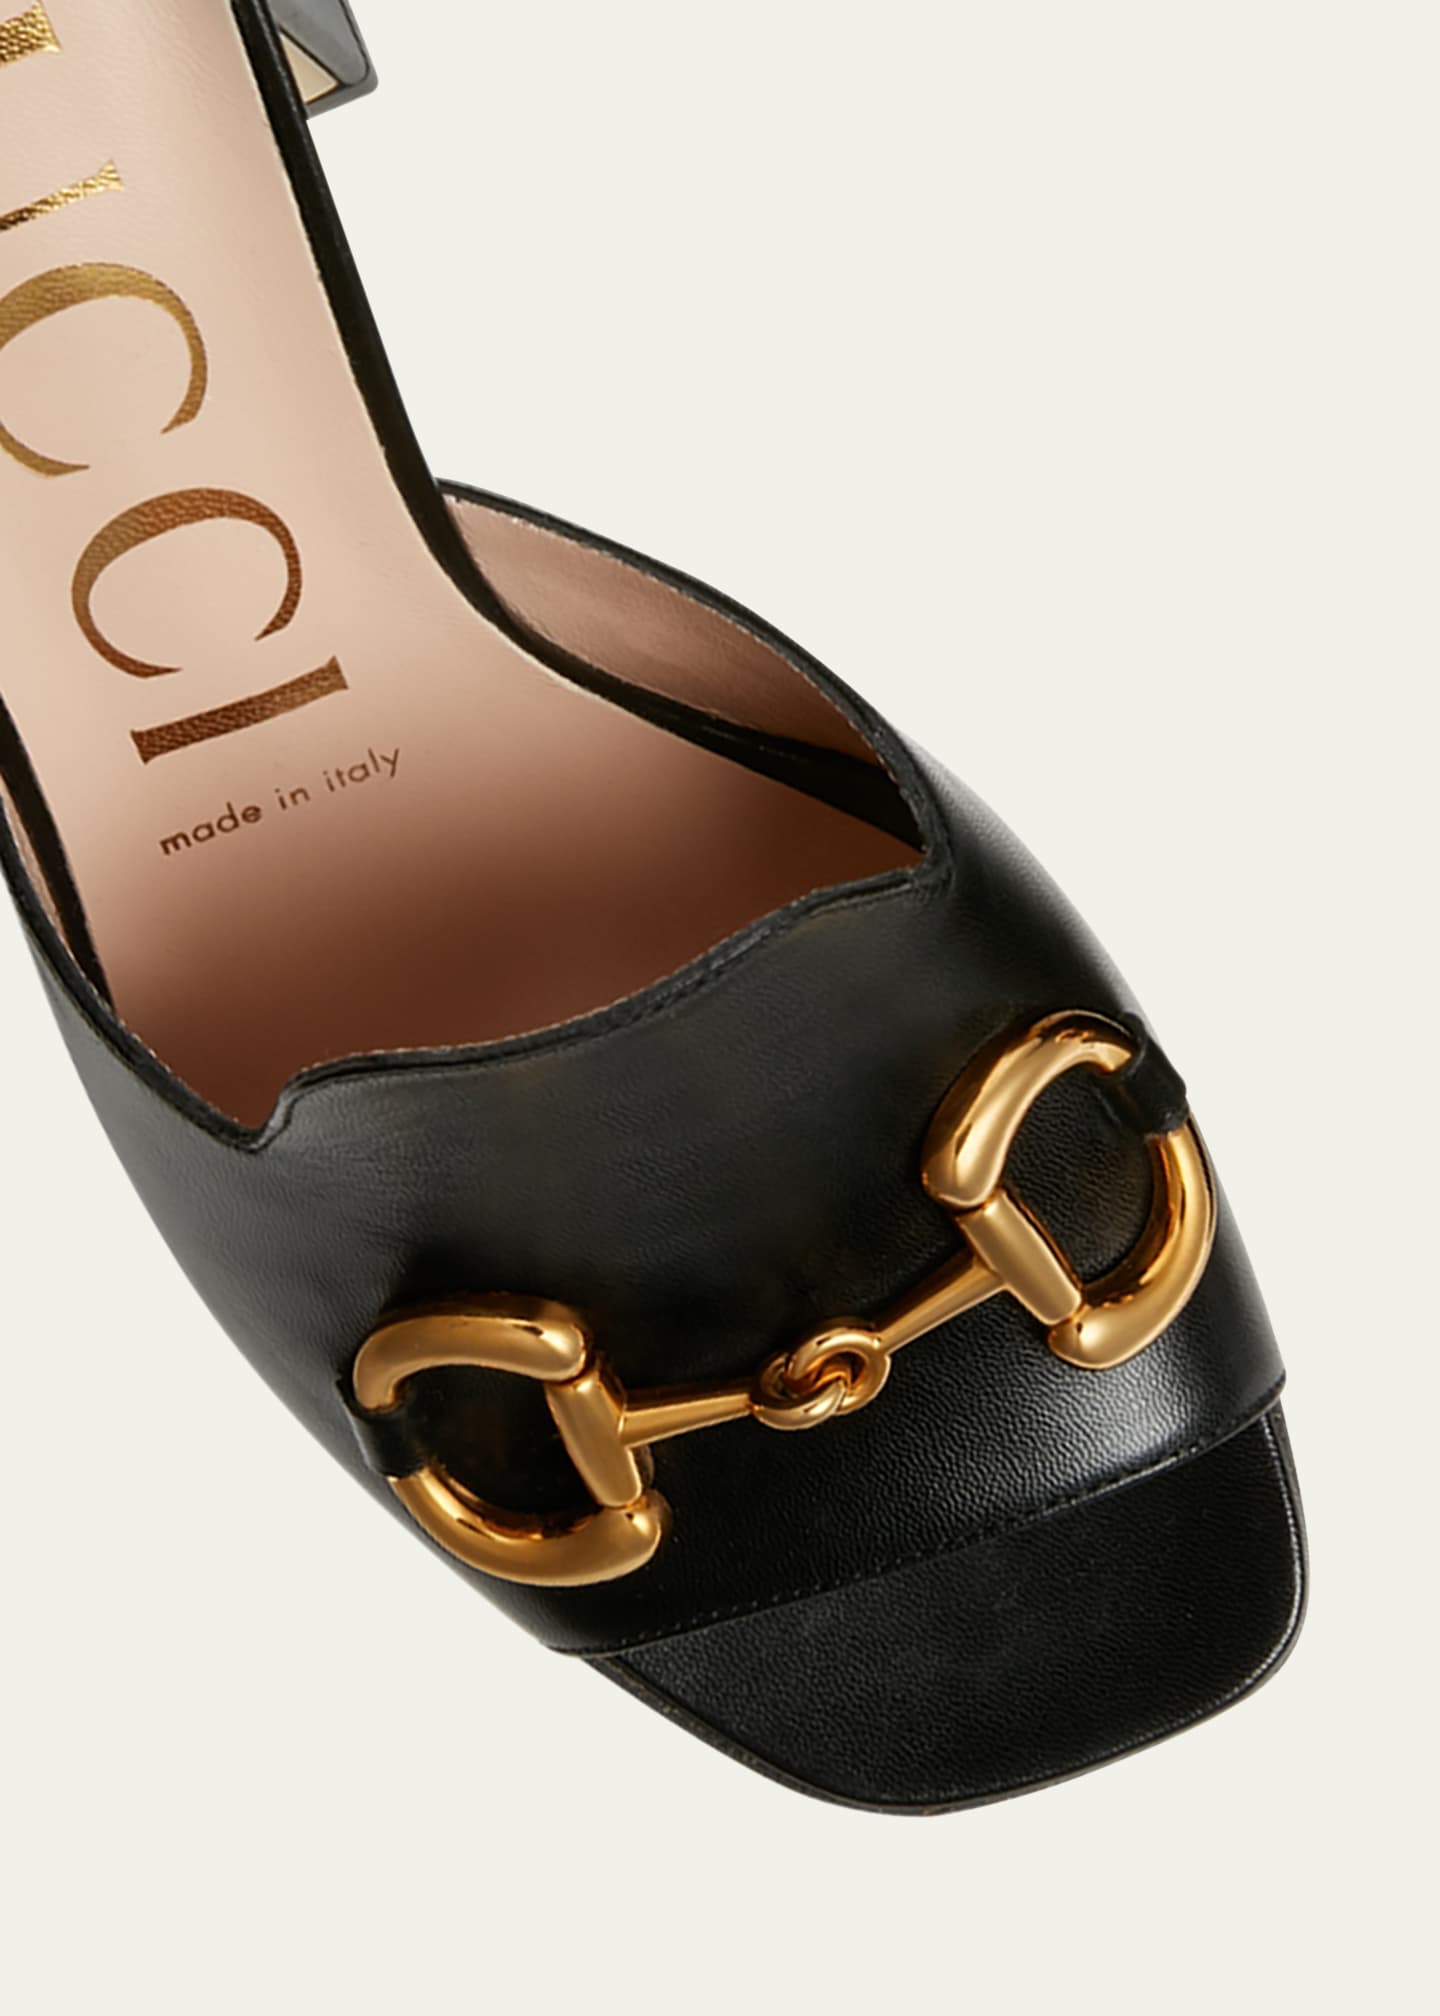 Gucci Women's Mid Heel Pump with Horsebit - Black - Size 8.5